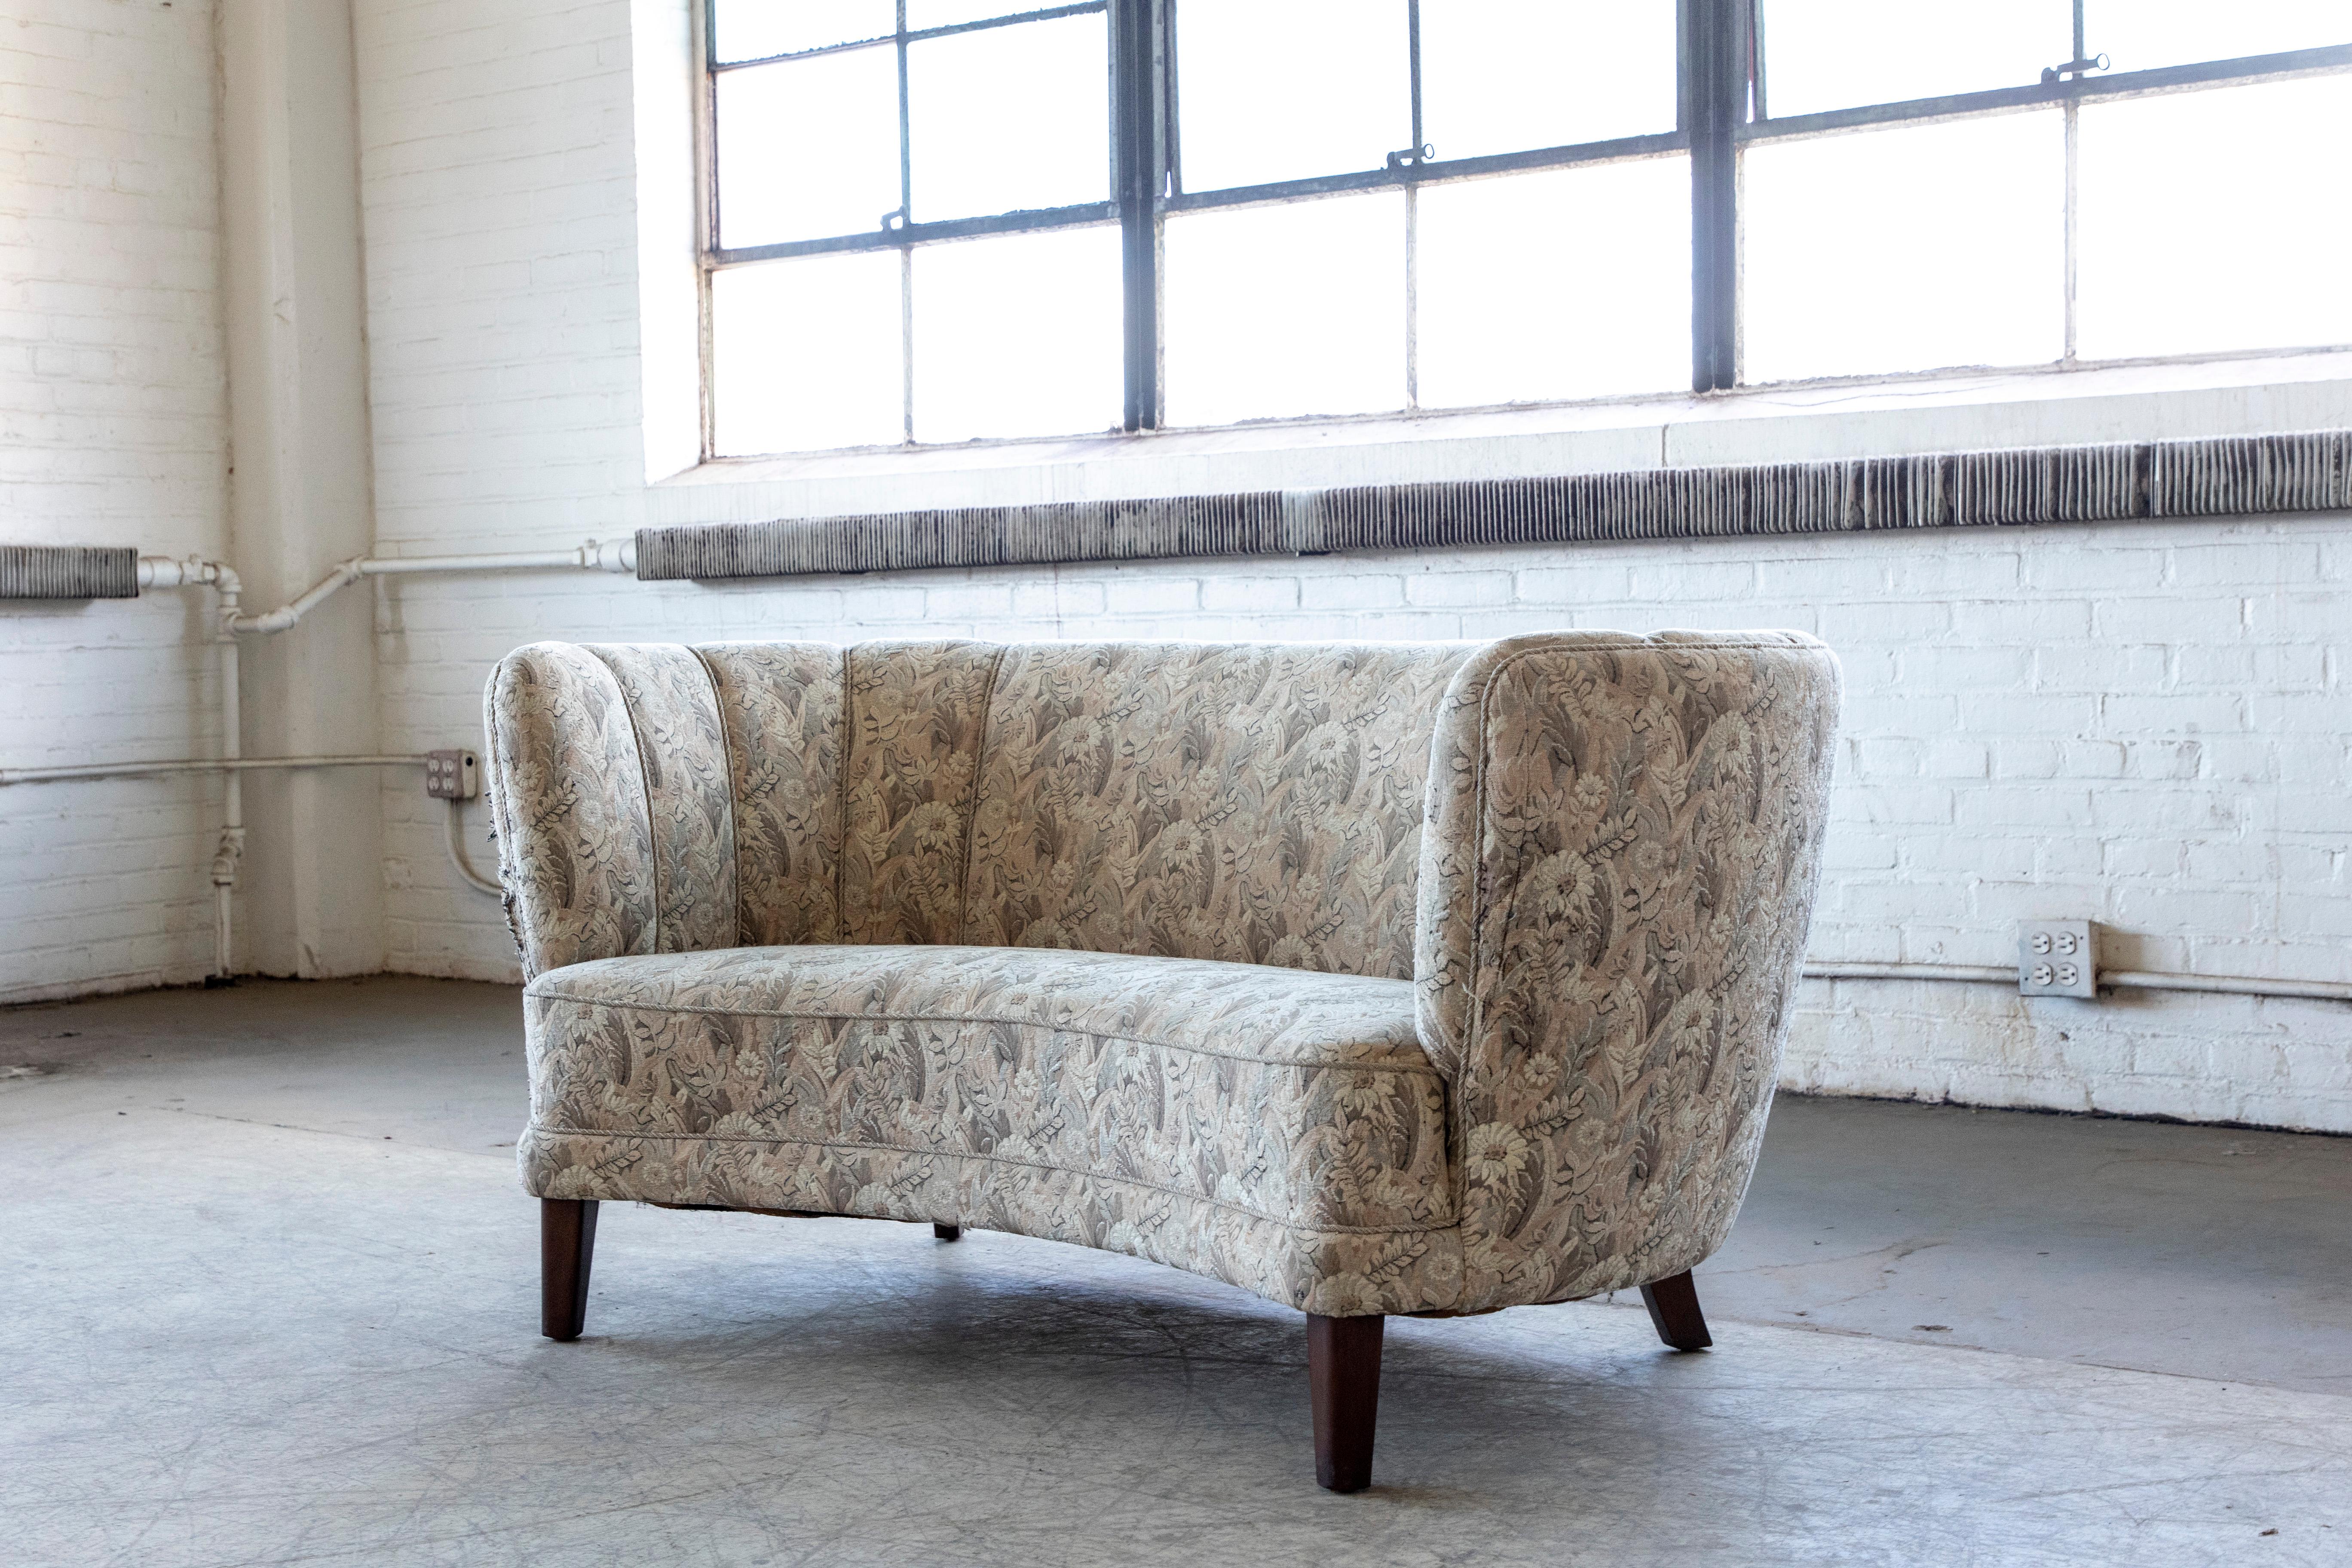 Schönes und sehr elegantes dänisches, geschwungenes Zweisitzer-Sofa auf einem Buchengestell und Beinen. Wahrscheinlich um 1950 hergestellt, auch wenn das ursprüngliche Design aus der späten Art-déco-Ära in den 1930er Jahren stammt. Banana-Sofas, die